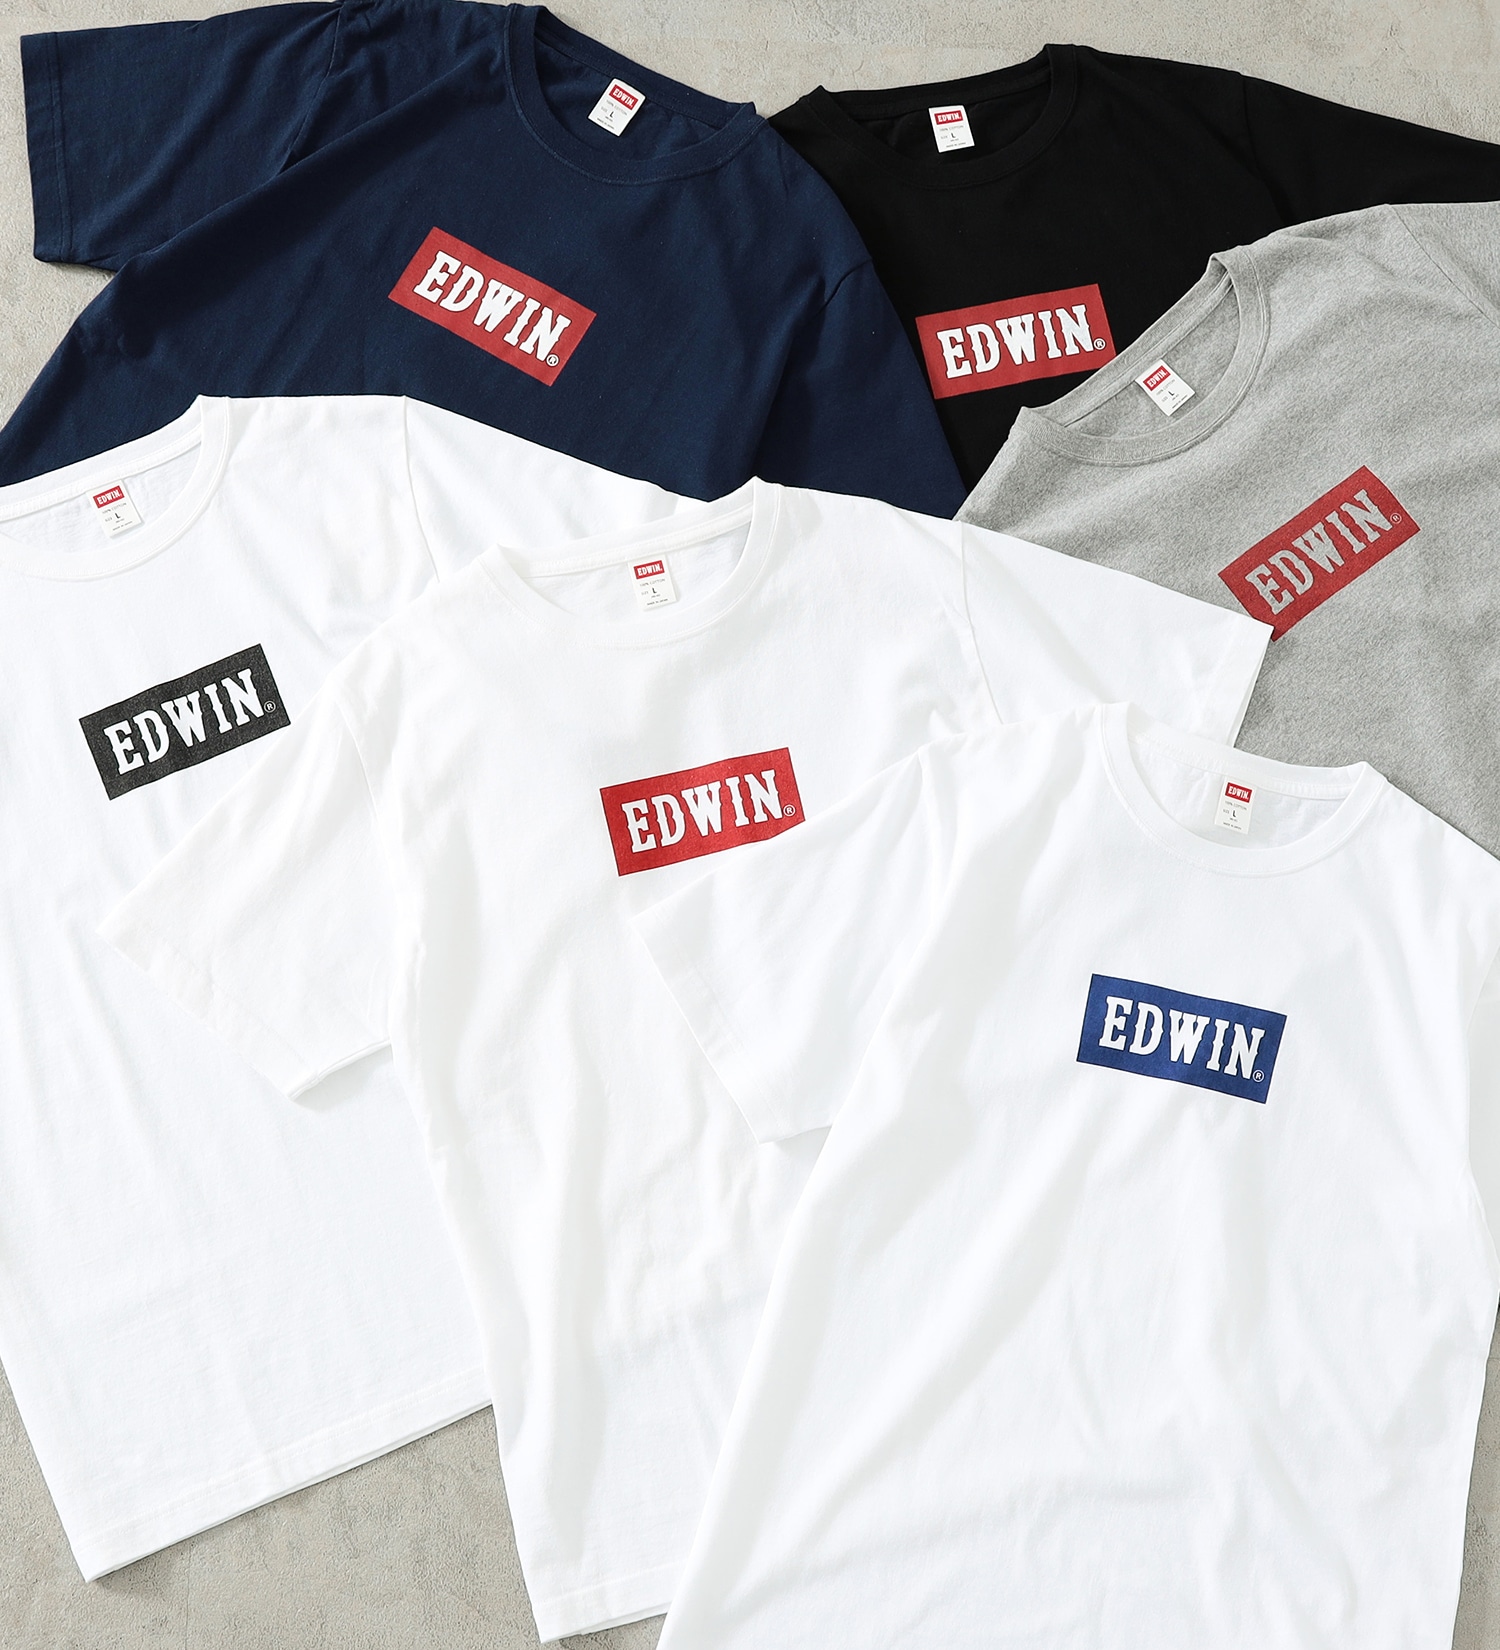 EDWIN(エドウイン)の【SALE】【コンセプトショップ限定】EDWIN LOGO TEE|トップス/Tシャツ/カットソー/メンズ|ホワイト2